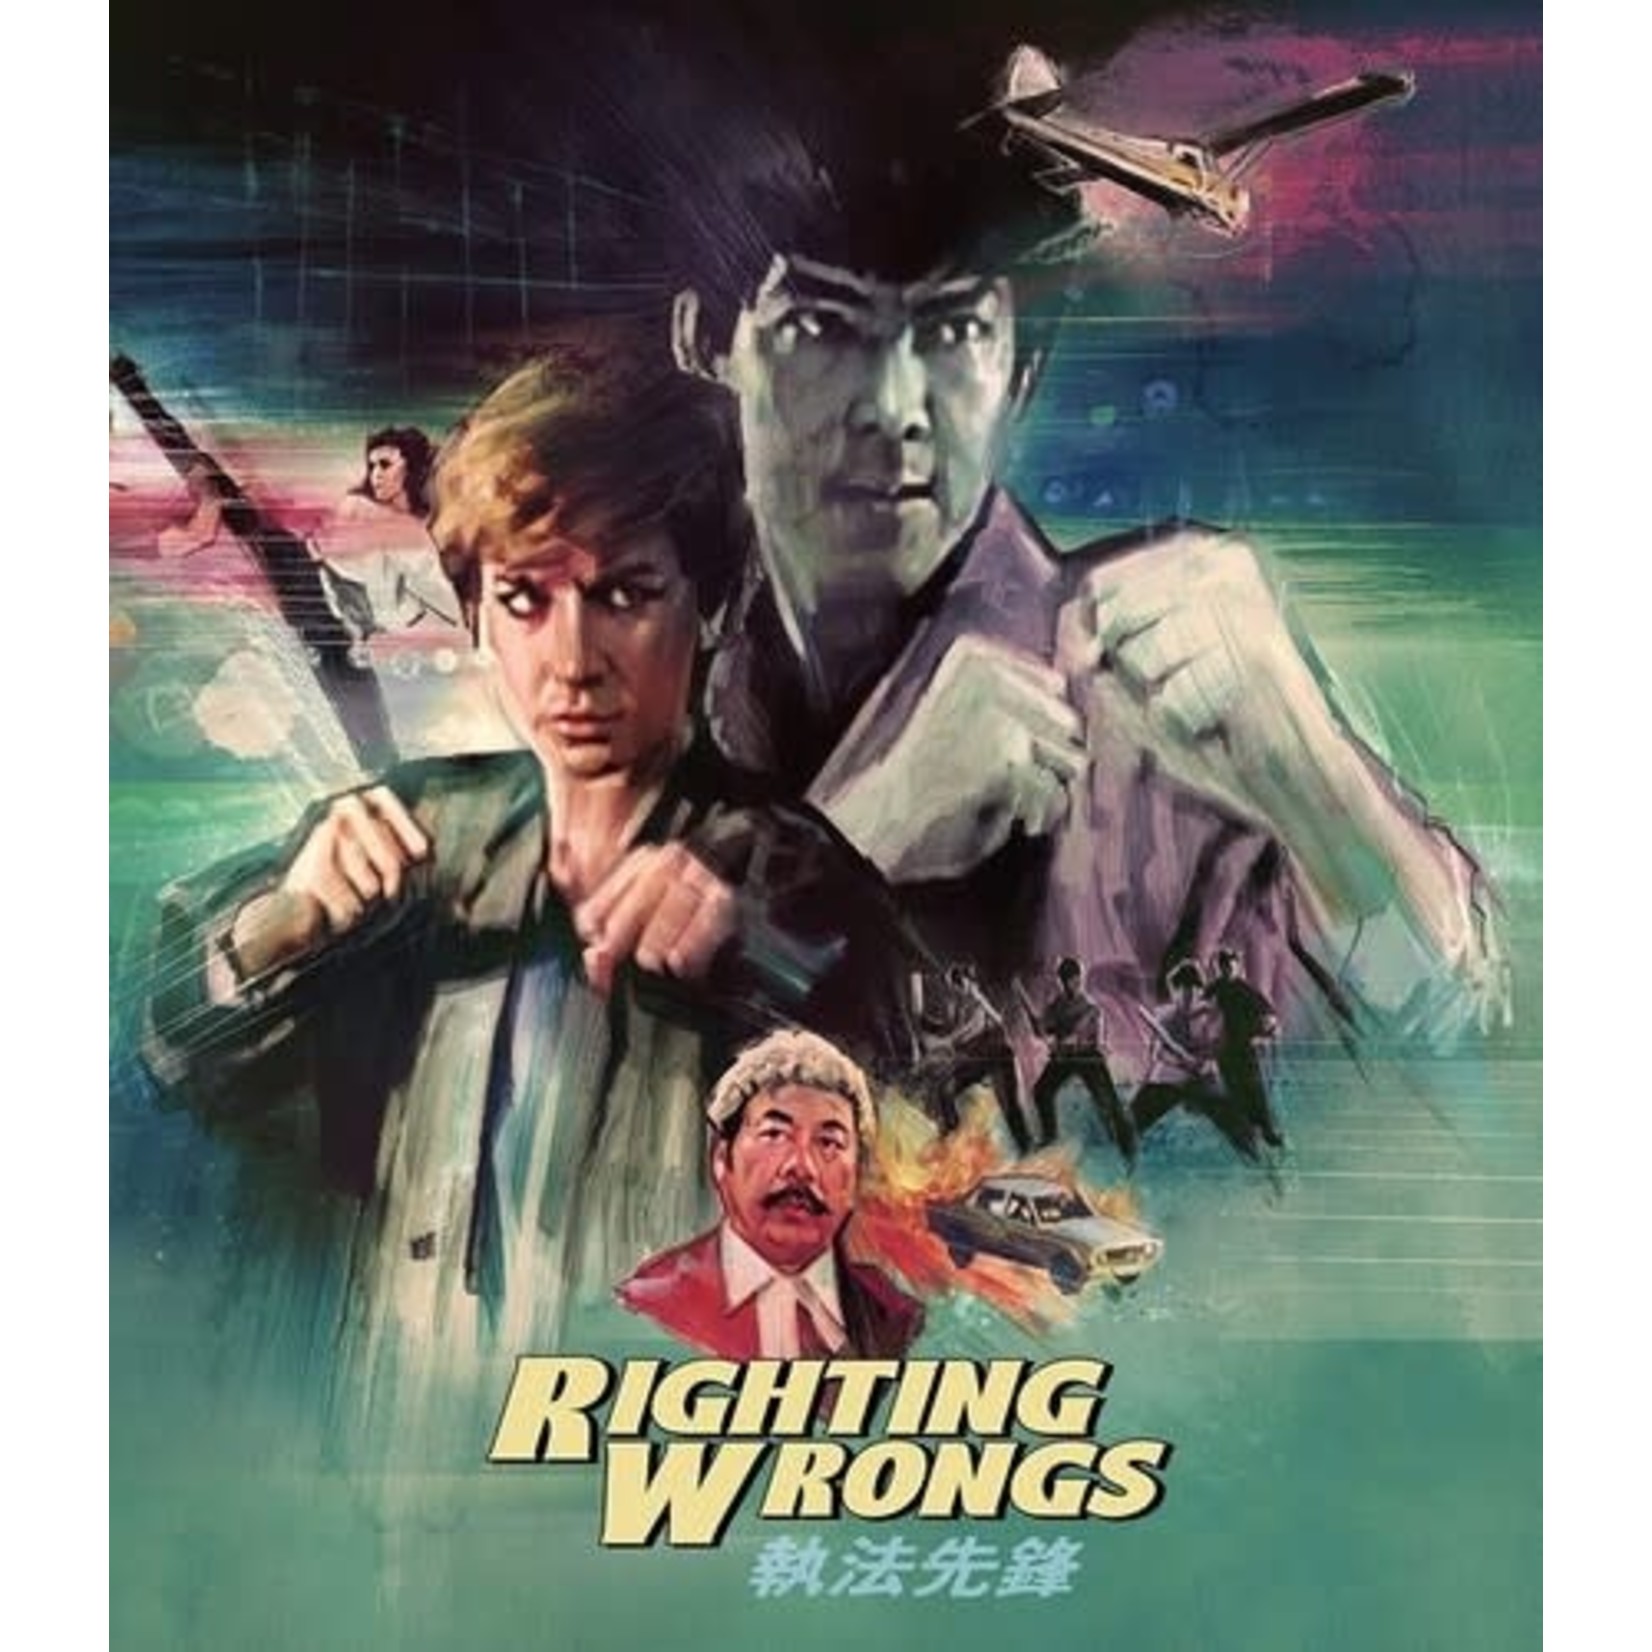 Righting Wrongs (1986) [BRD]